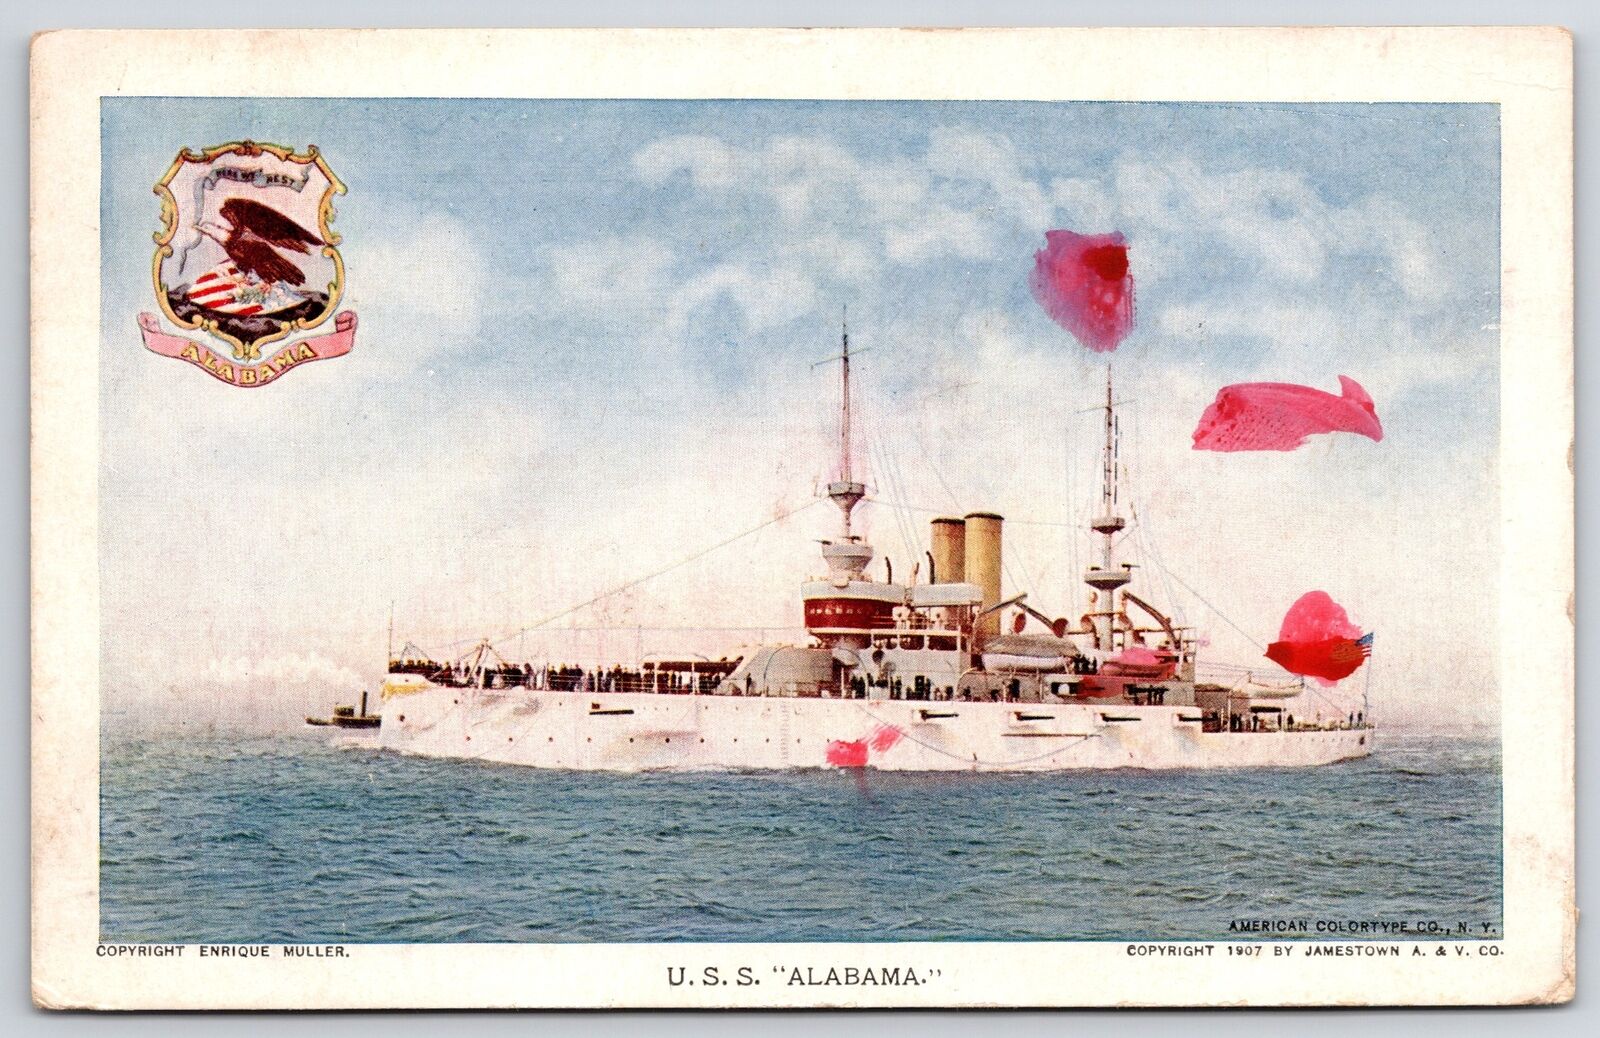 1909 U.S.S. Alabama War Ship at Sea Military Navy Jamestown Exposition Postcard